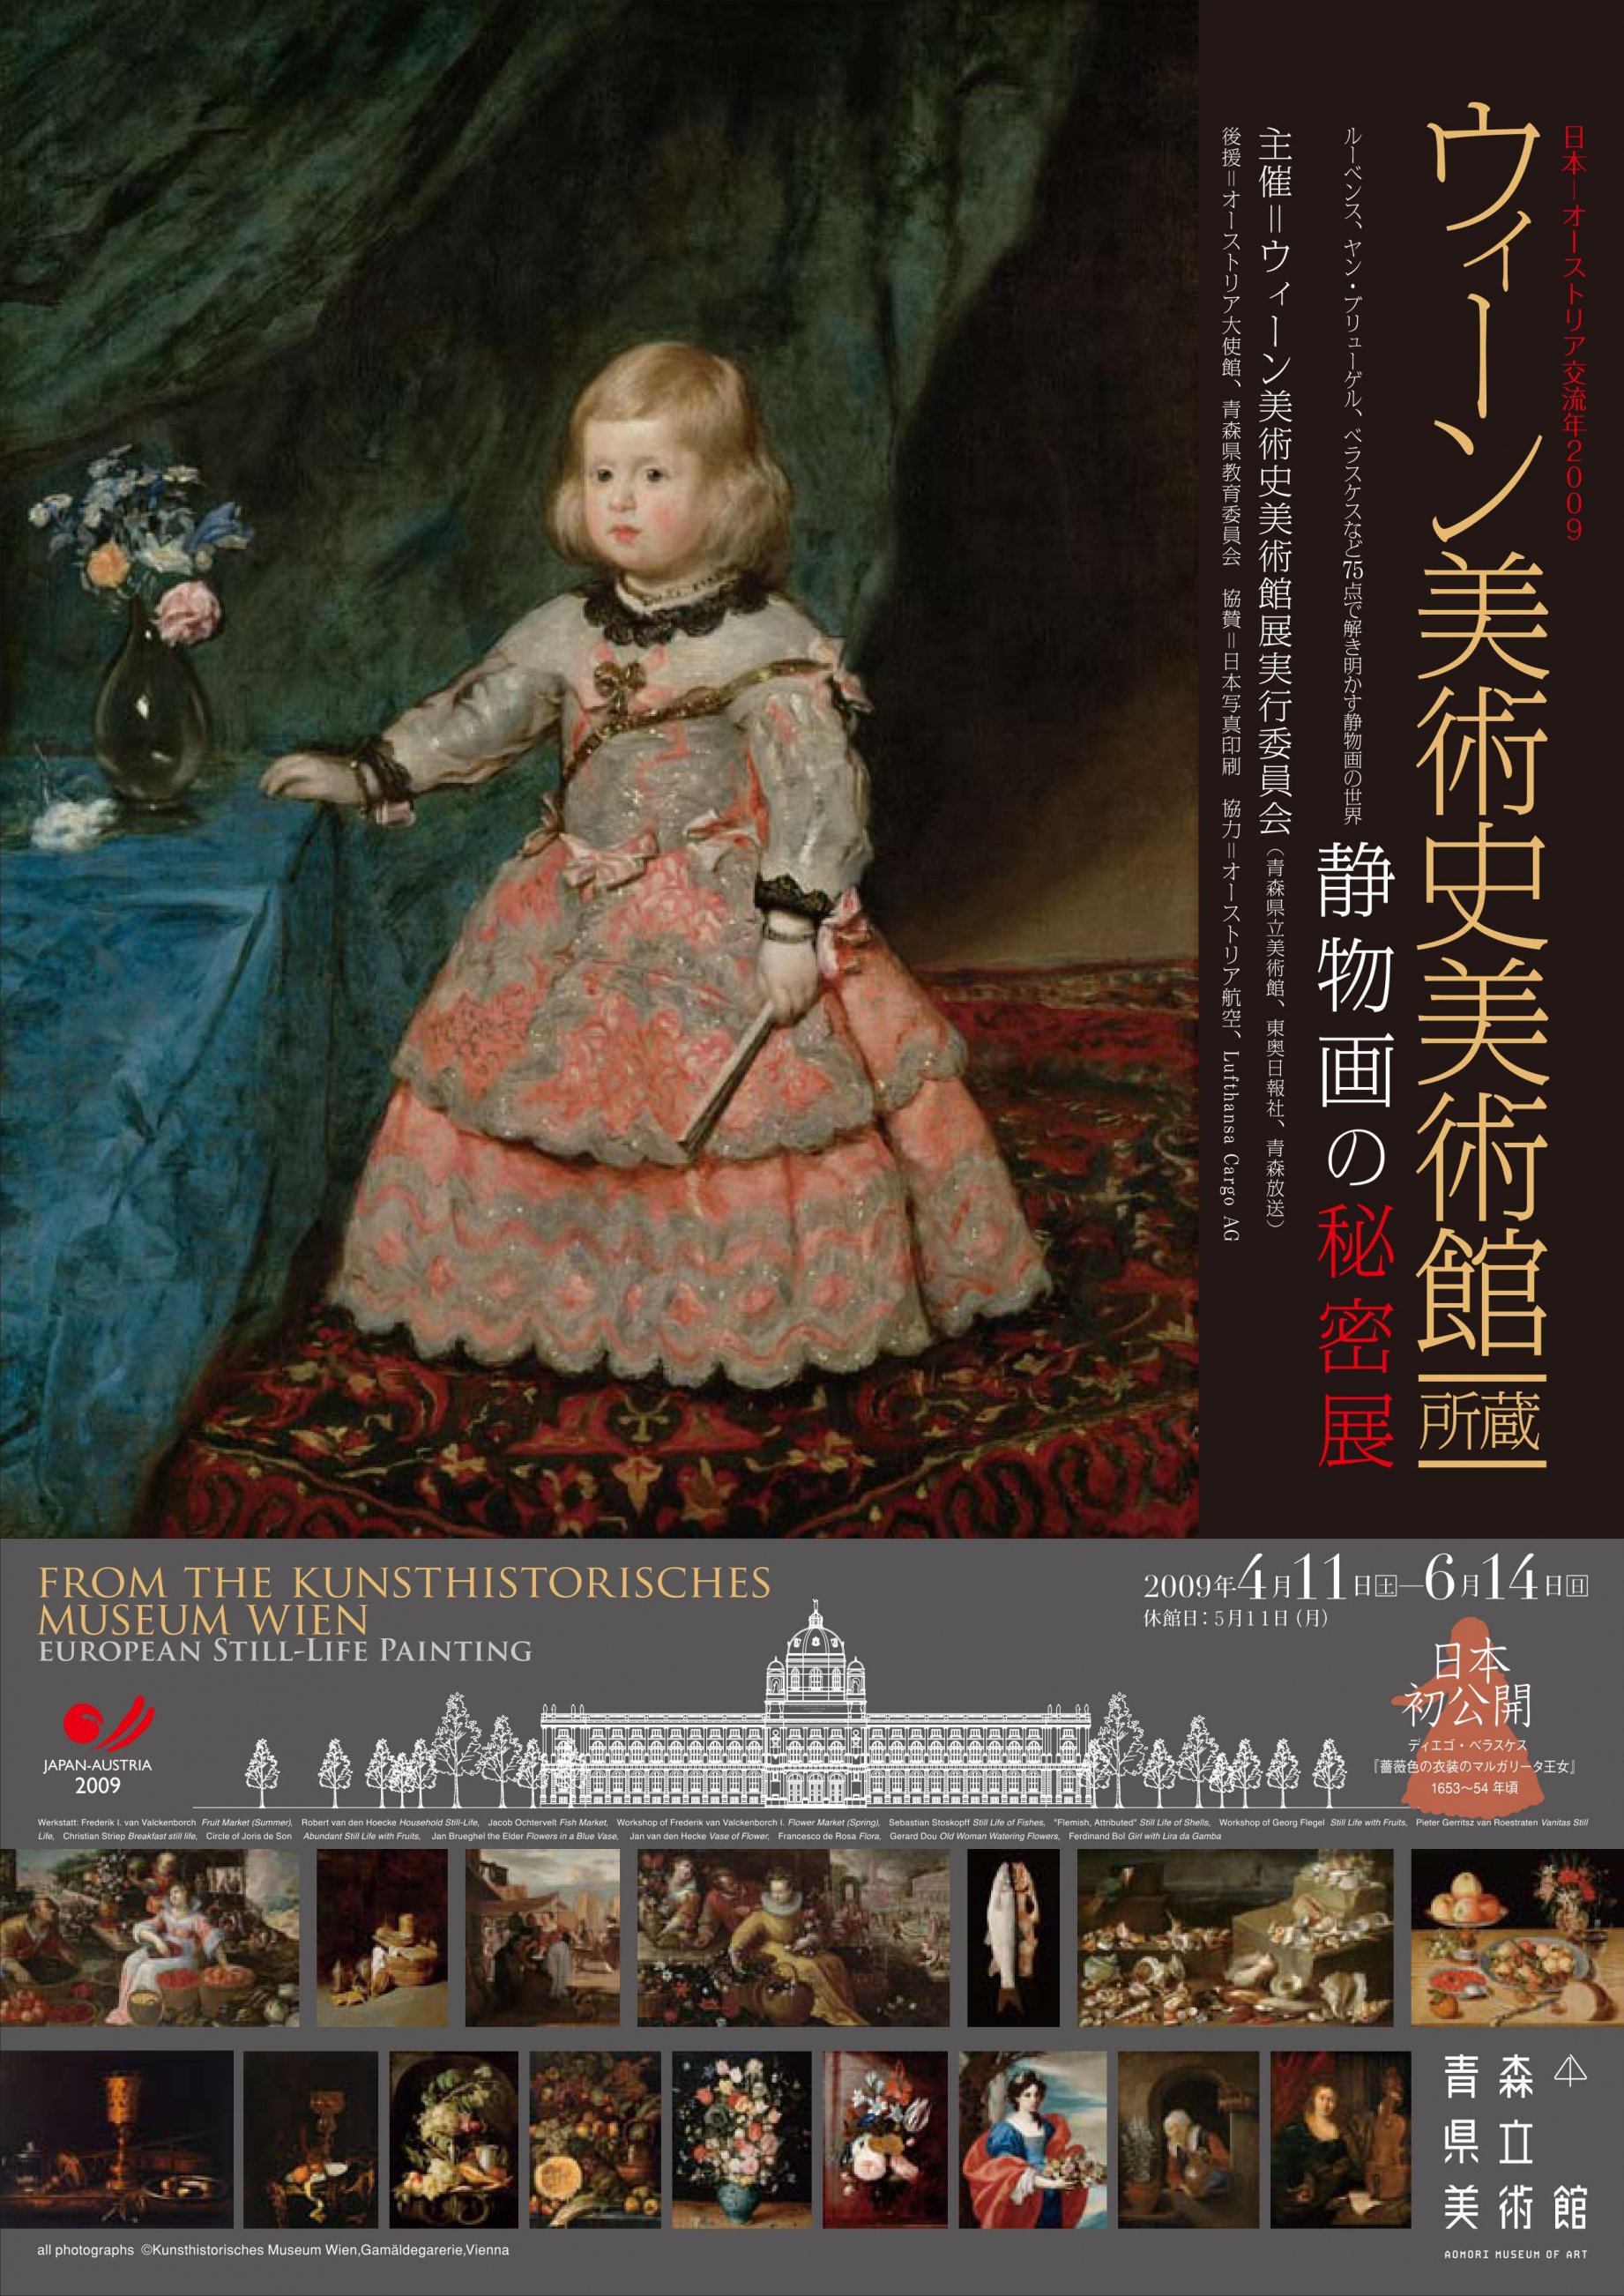 日本オーストリア交流年2009　ウィーン美術史美術館所蔵 静物画の秘密展